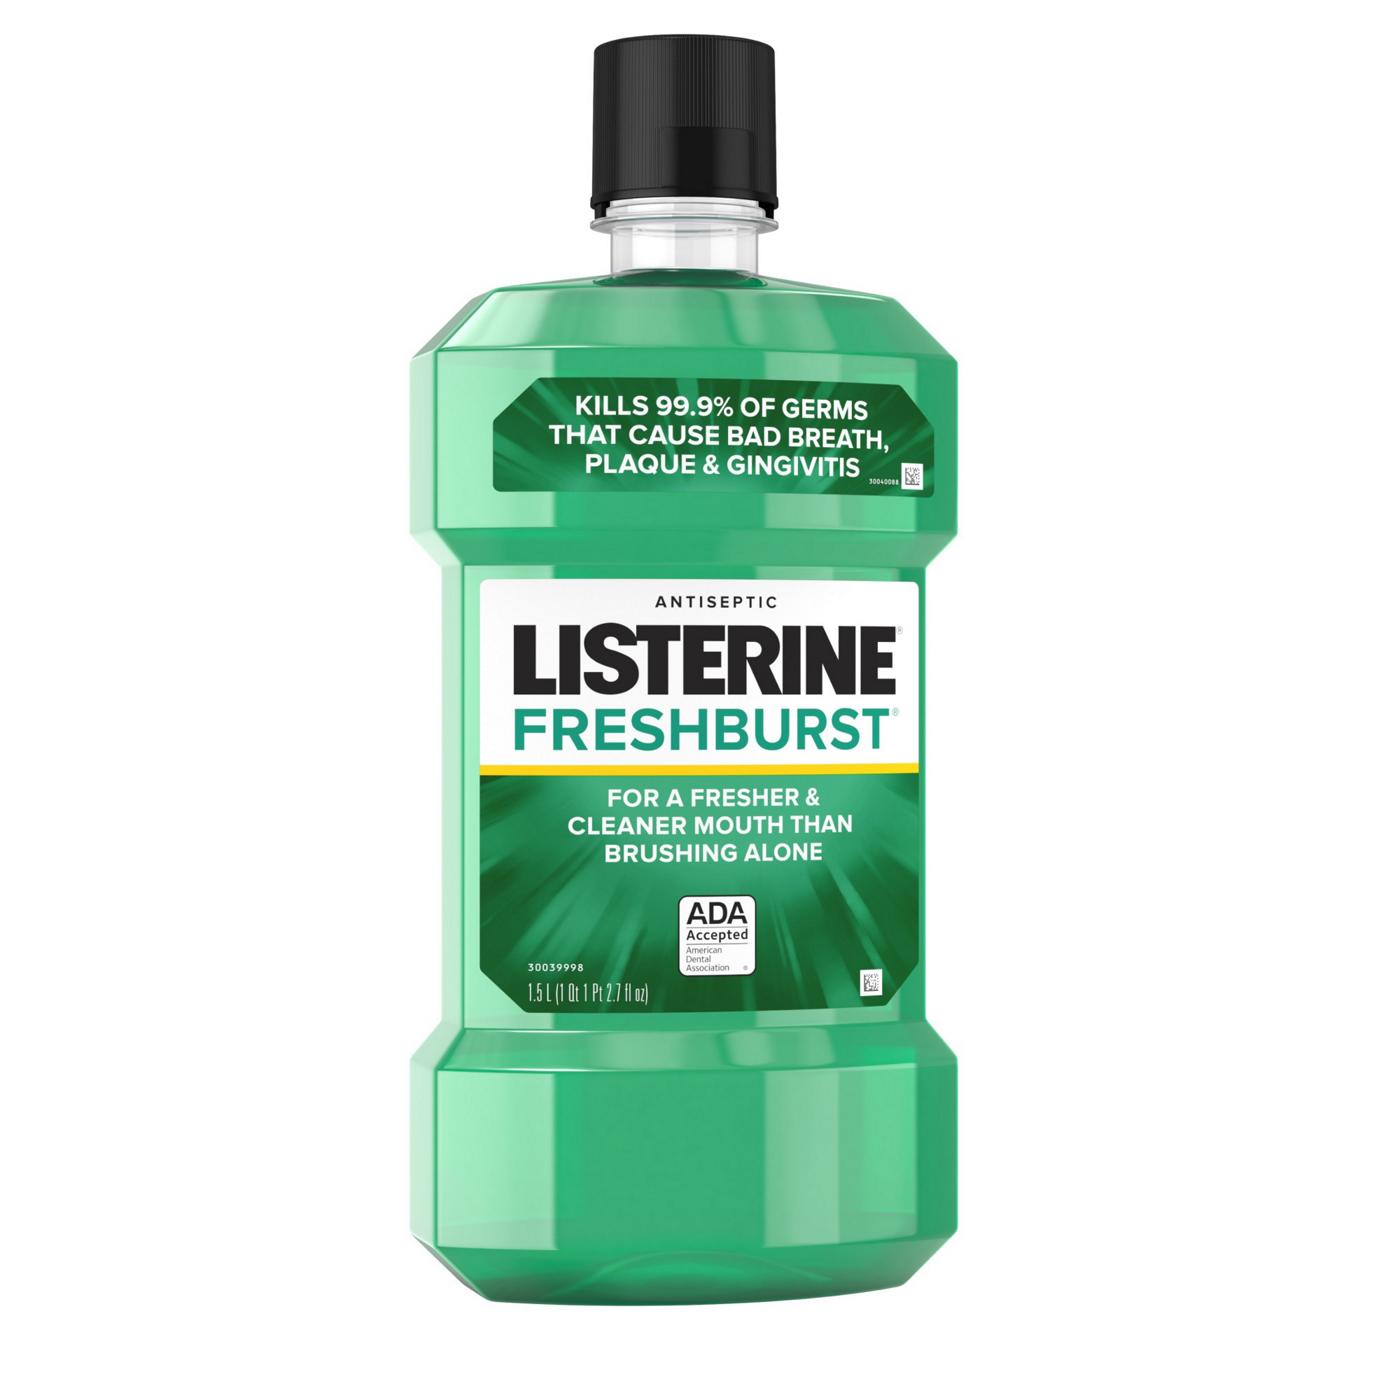 Listerine Freshburst Antiseptic Mouthwash; image 6 of 6